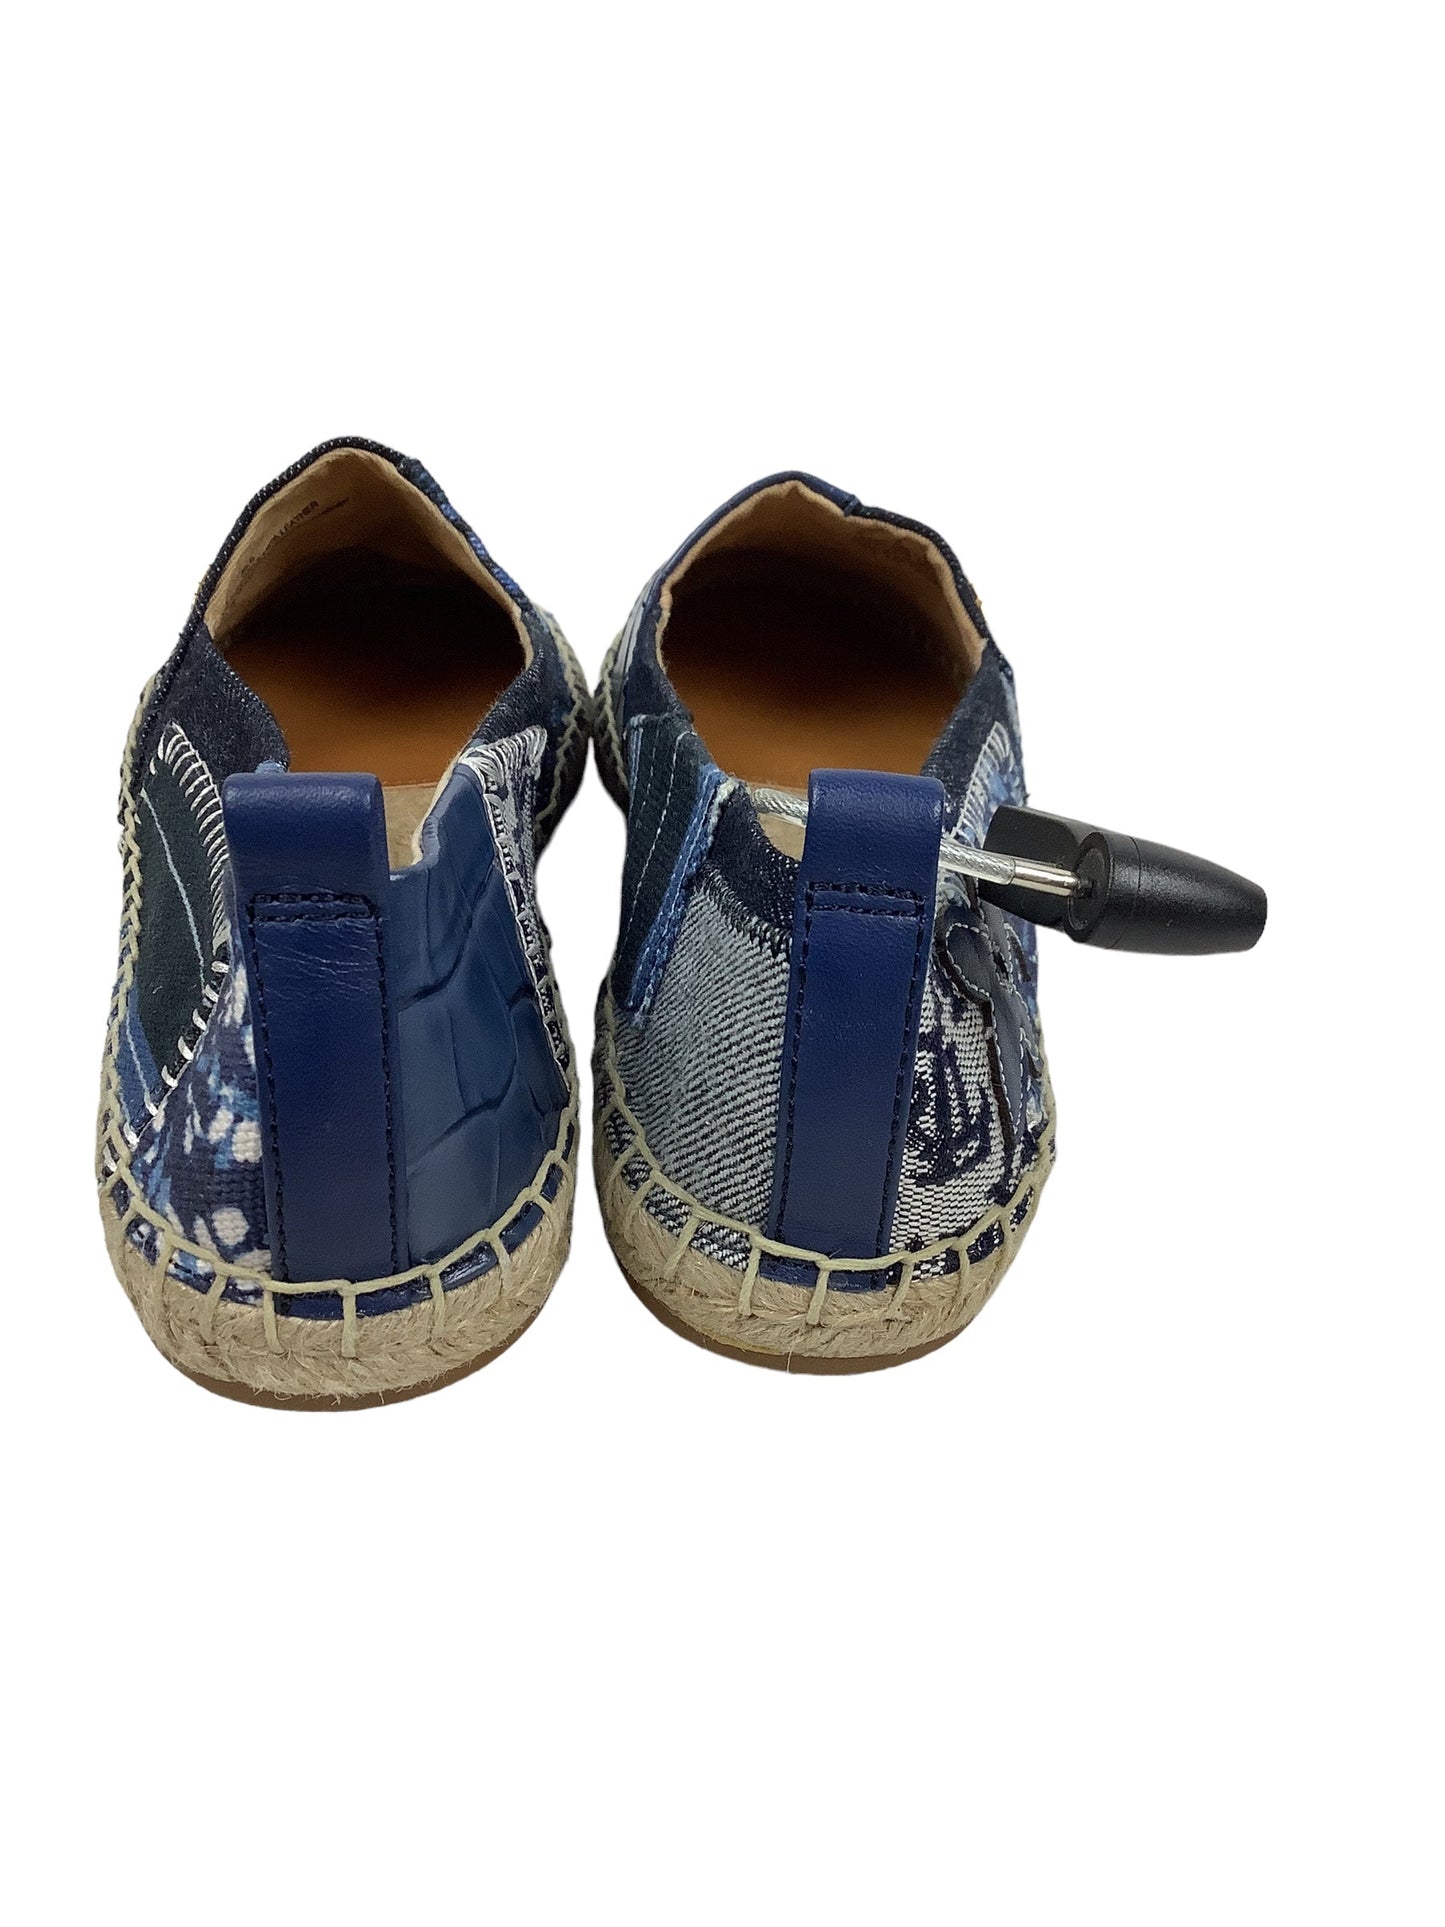 Shoes Flats By Ralph Lauren  Size: 6